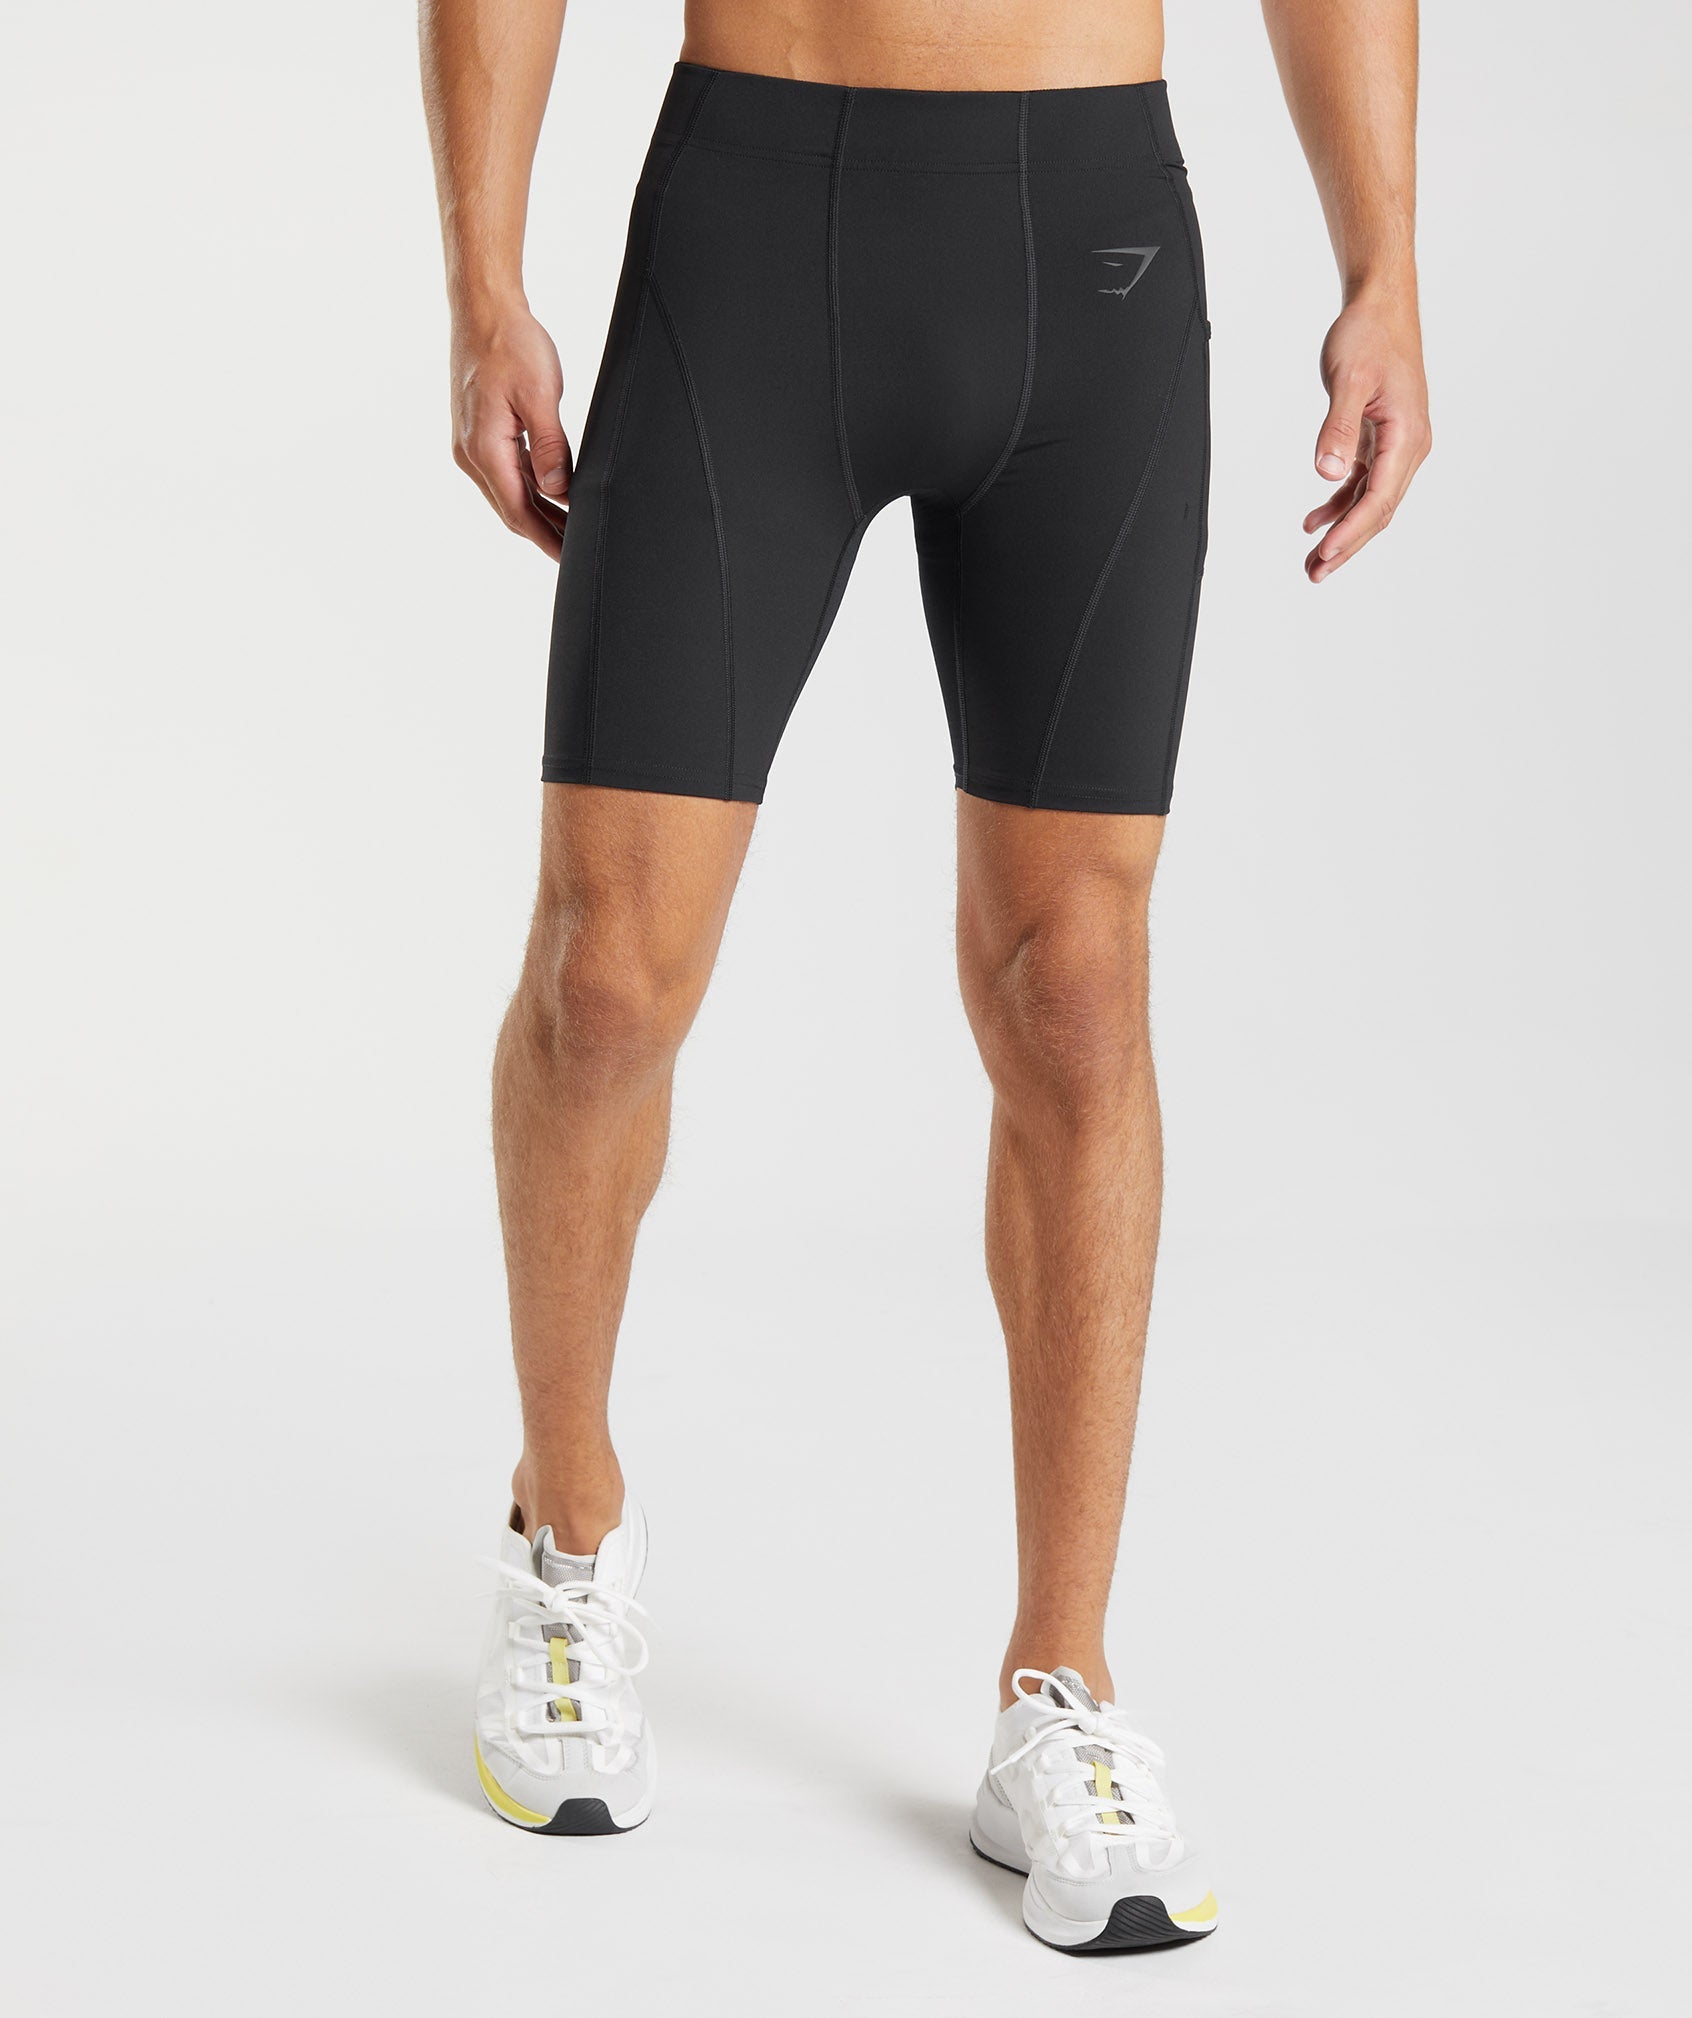 Men's Compression  Shorts, Tights & Tops – 2XU US